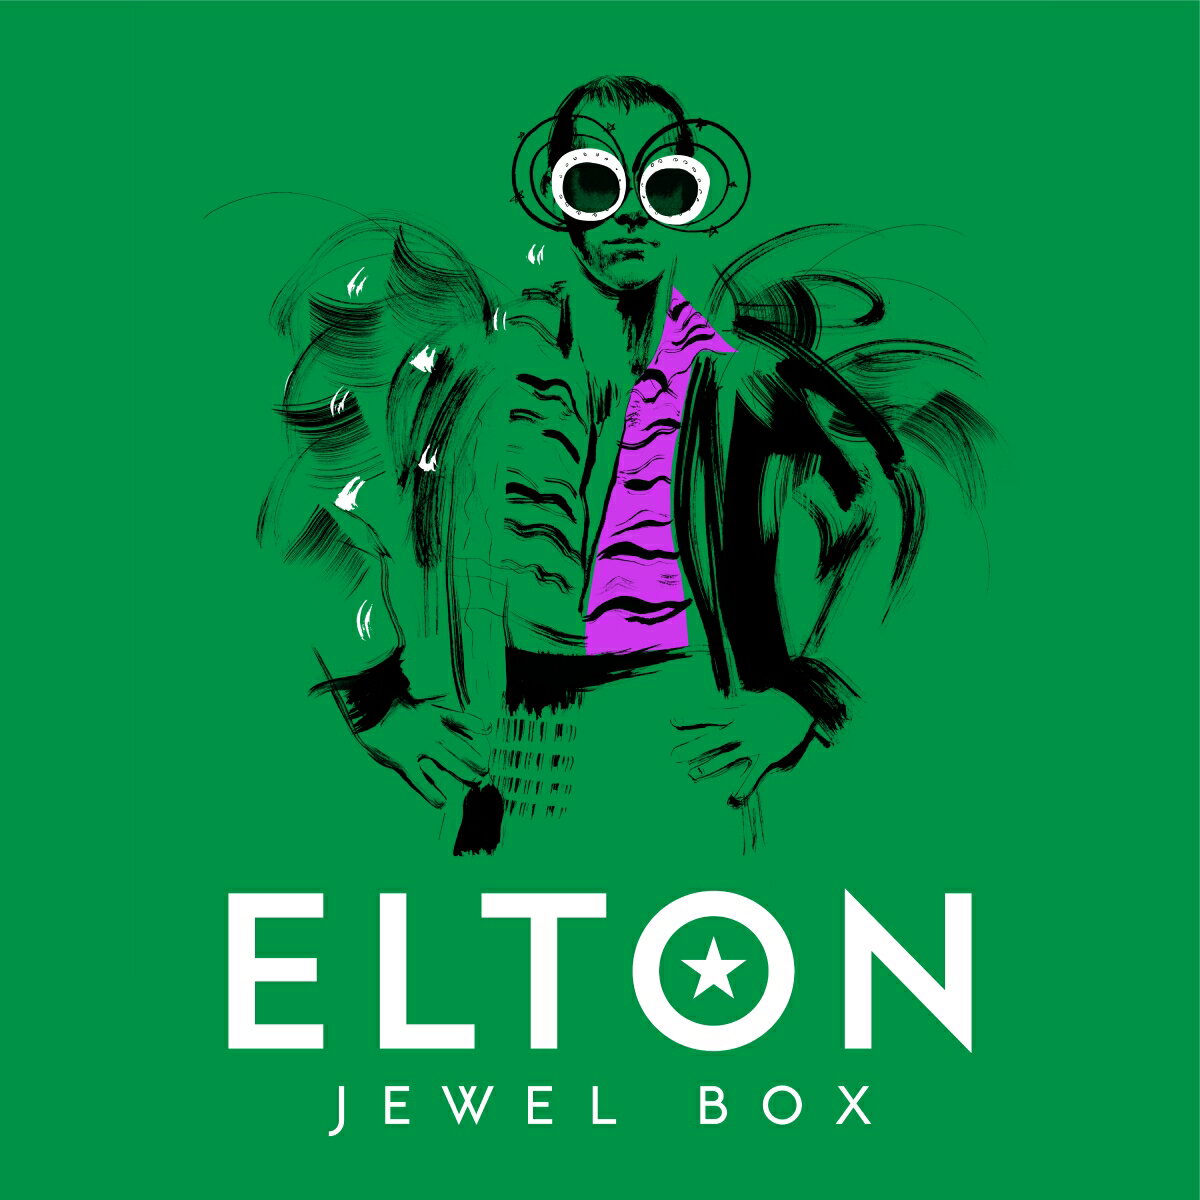 エルトン・ジョンは、1960年代のレア曲から、比較的知名度の低いB面曲、 さらにエルトンが個人的に選んだ隠れた名曲までを含む、 
埋蔵されていた宝物を徹底的に掘り下げて発掘した、 膨大な楽曲コレクションの発売を発表 

貴重な珠玉の名曲やコレクターズ・アイテムが詰まった豪華ボックス・セットには、 60曲の未発表曲に加え、
初デジタル音源化された81曲を収録。 新規インタビュー及び蔵出し写真・画像を掲載したハードカバー上製本付き。
8枚組CDボックス・セット(スリップケース入りハードカバー上製本付き)
*日本盤は、”輸入国内盤仕様で発売 / 日本盤CDのみSHM-CD仕様。